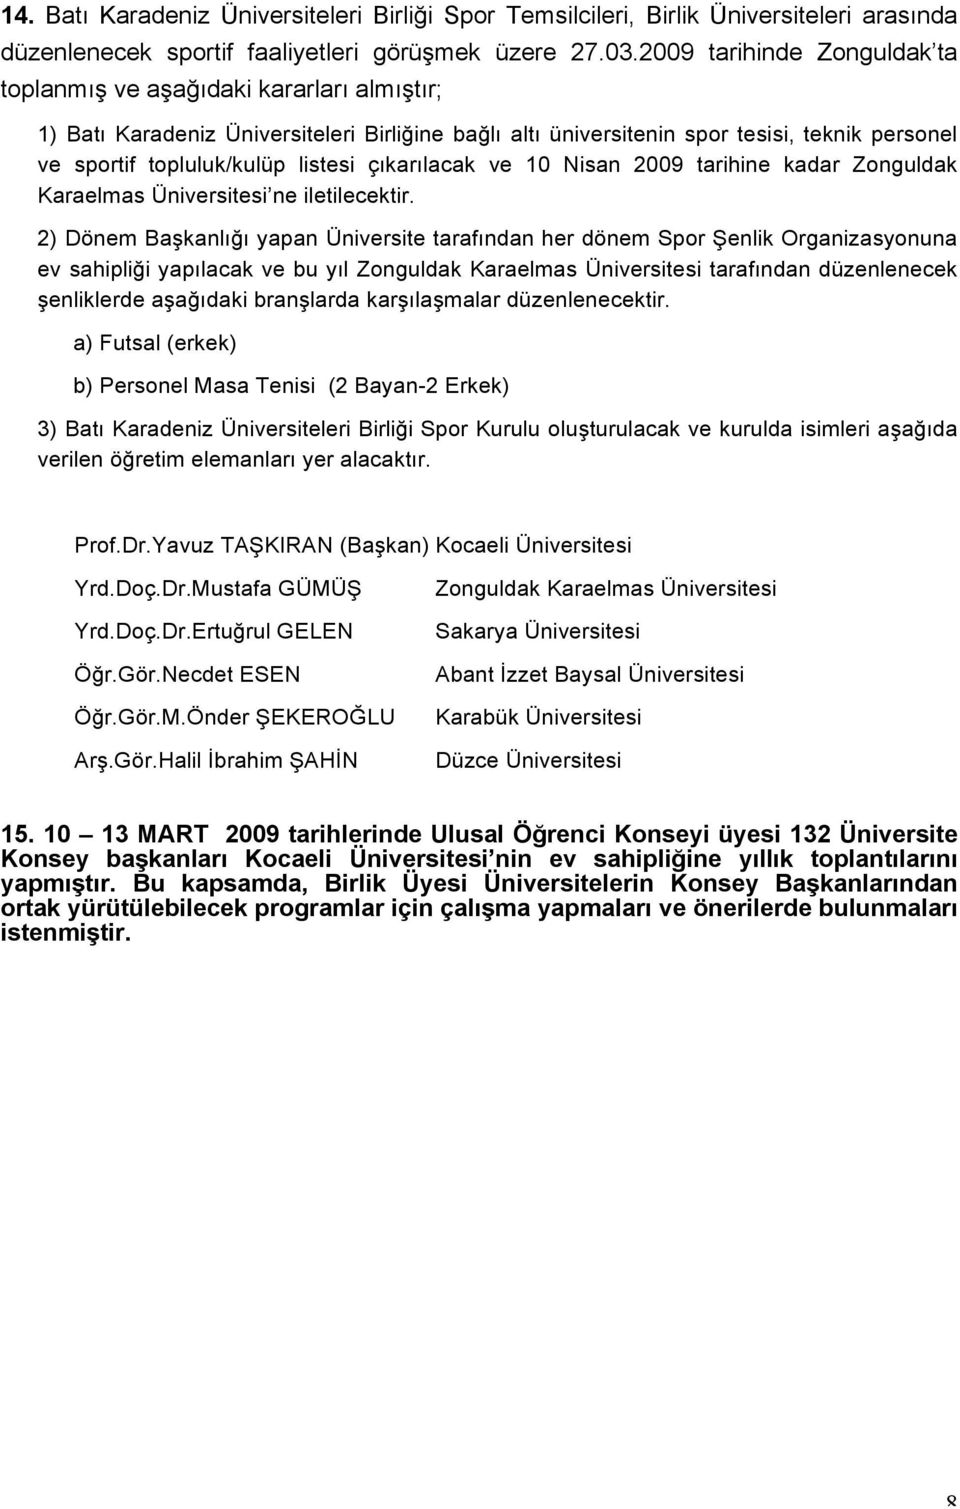 listesi çıkarılacak ve 10 Nisan 2009 tarihine kadar Zonguldak Karaelmas Üniversitesi ne iletilecektir.